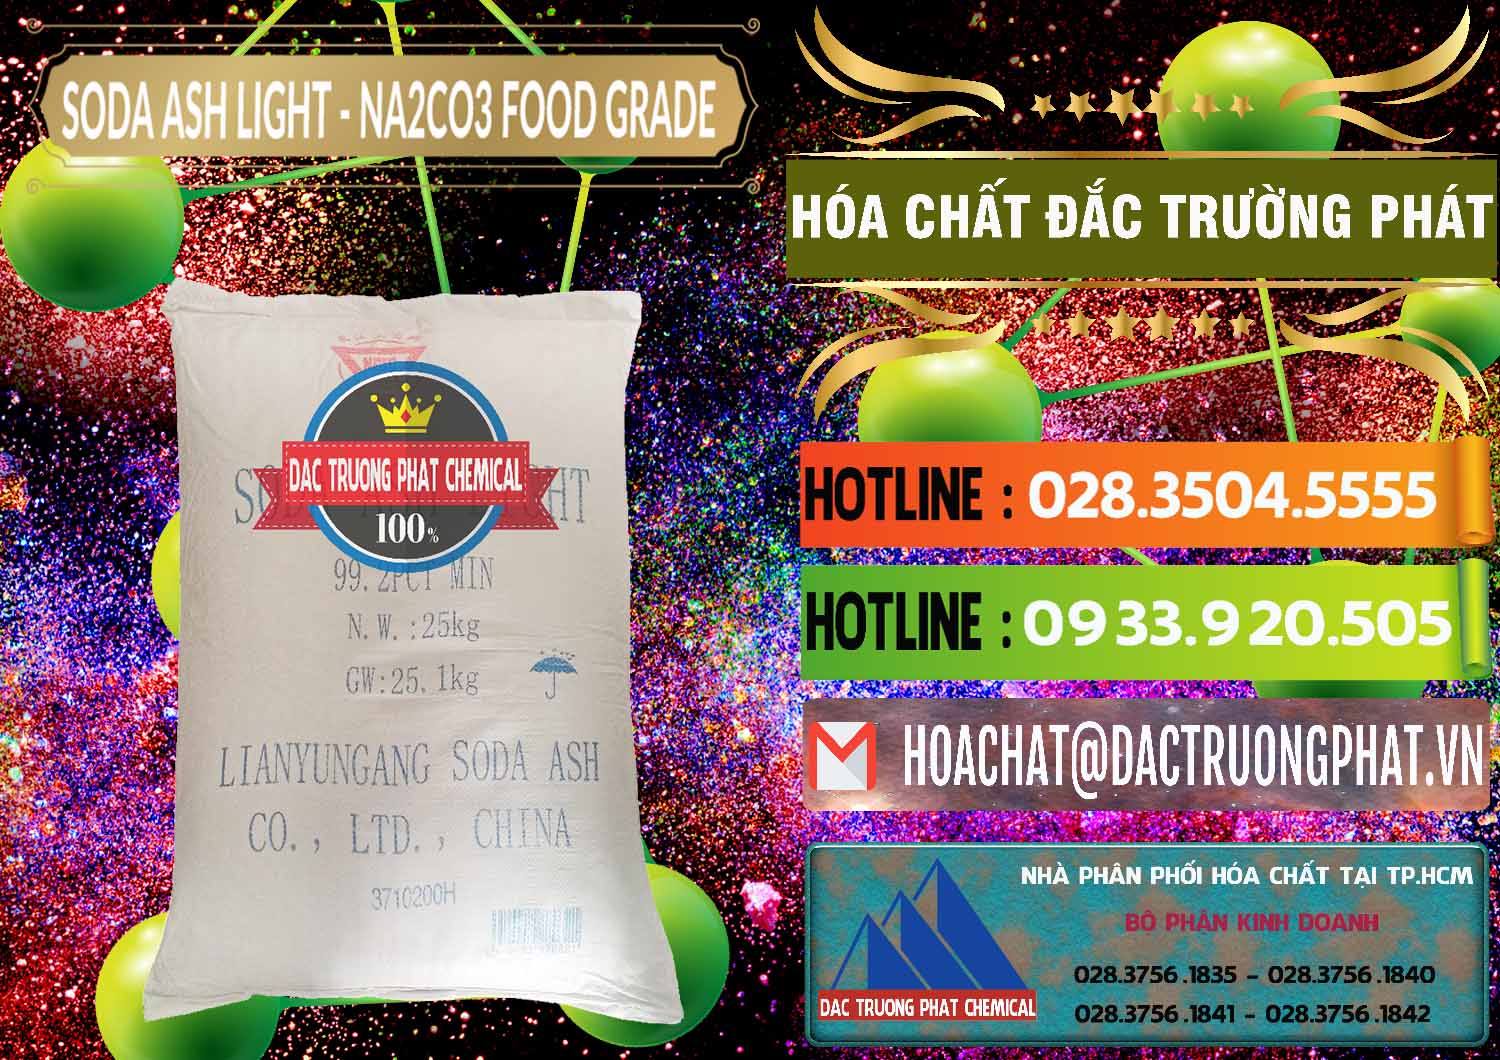 Cty chuyên cung ứng ( bán ) Soda Ash Light – NA2CO3 Food Grade Trung Quốc China - 0127 - Đơn vị chuyên phân phối ( cung ứng ) hóa chất tại TP.HCM - cungcaphoachat.com.vn